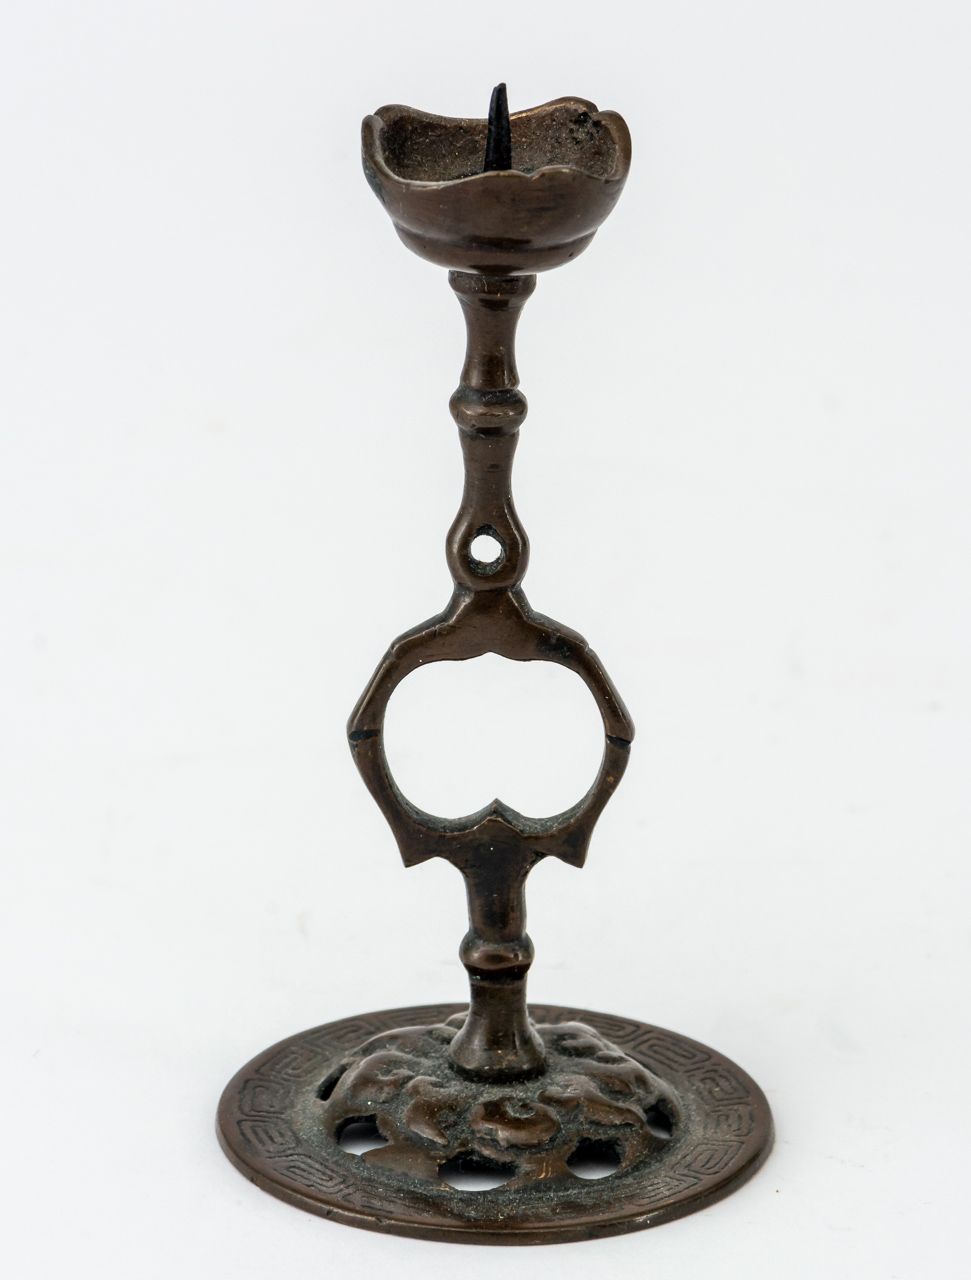 KERZENSTÄNDER China / Japón, bronce, siglo XIX o más

12 cm de altura